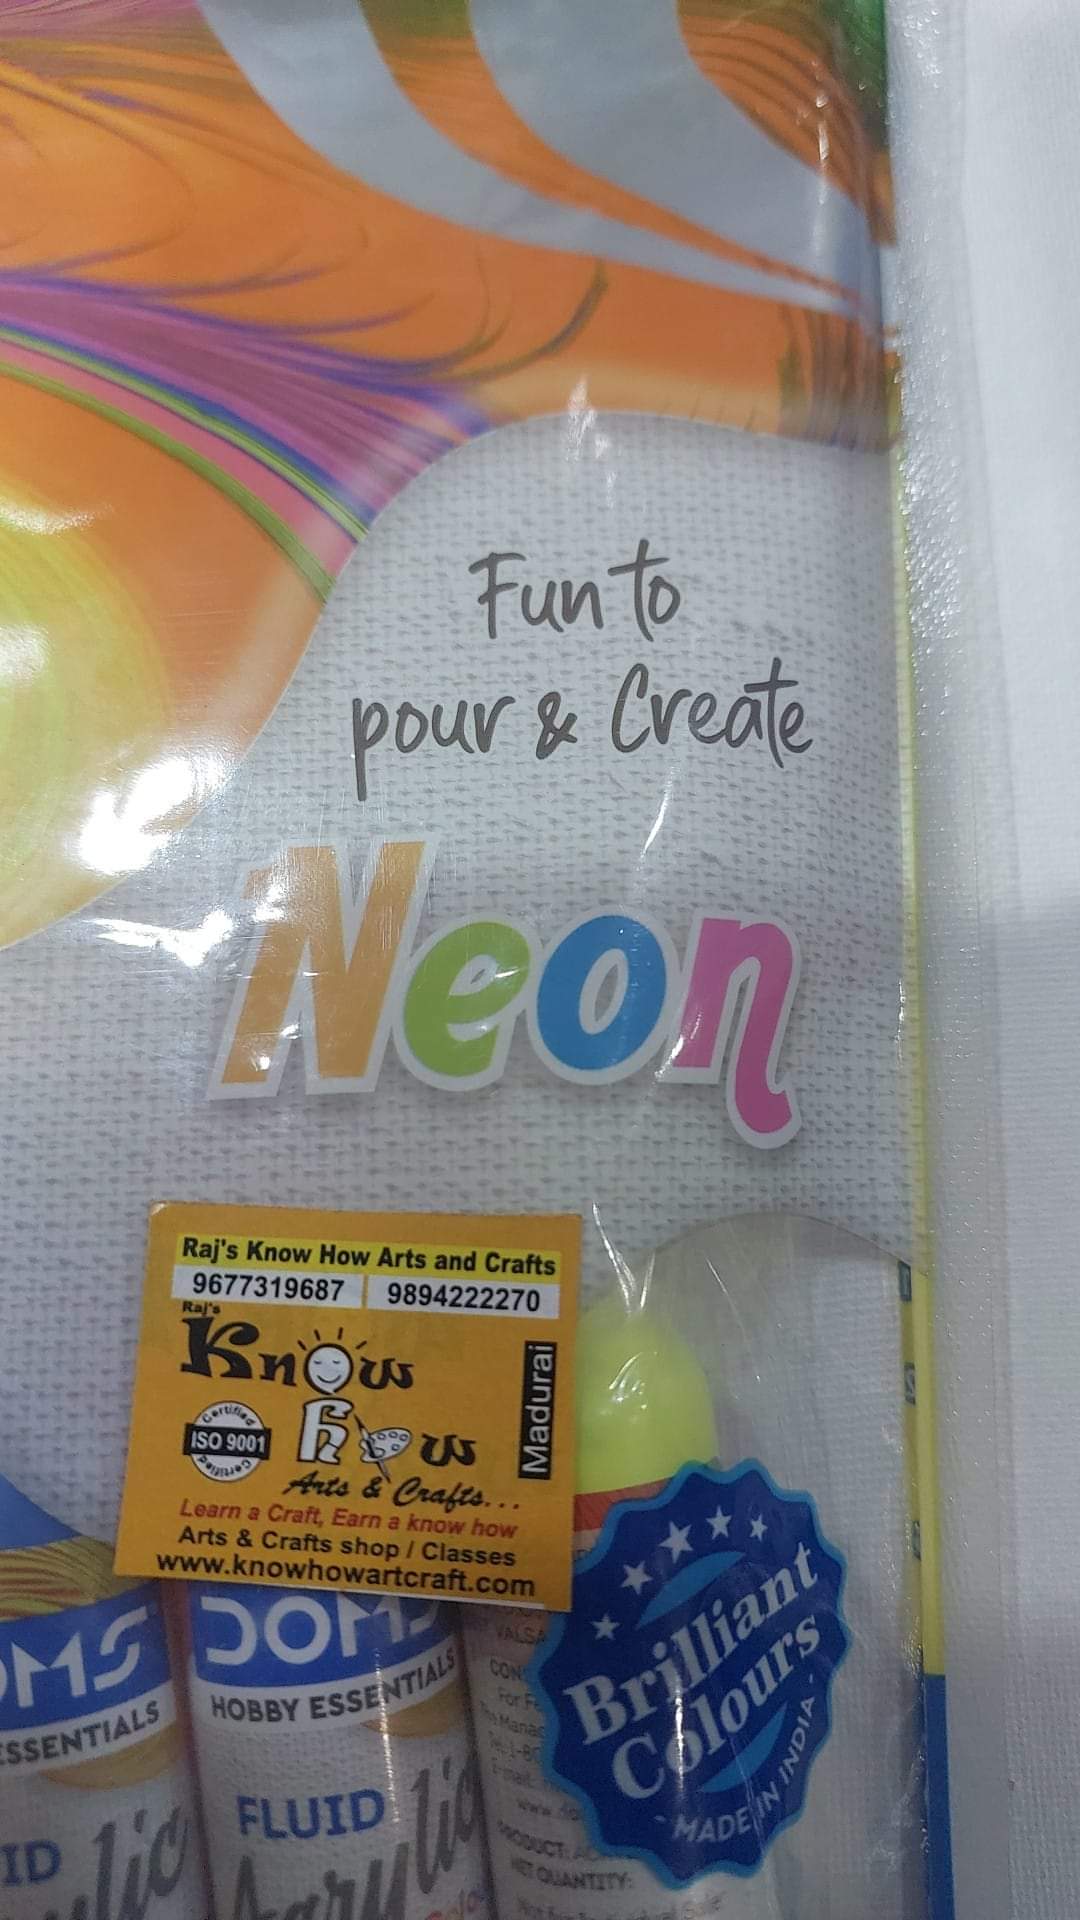 Neon fluid acrylic kit